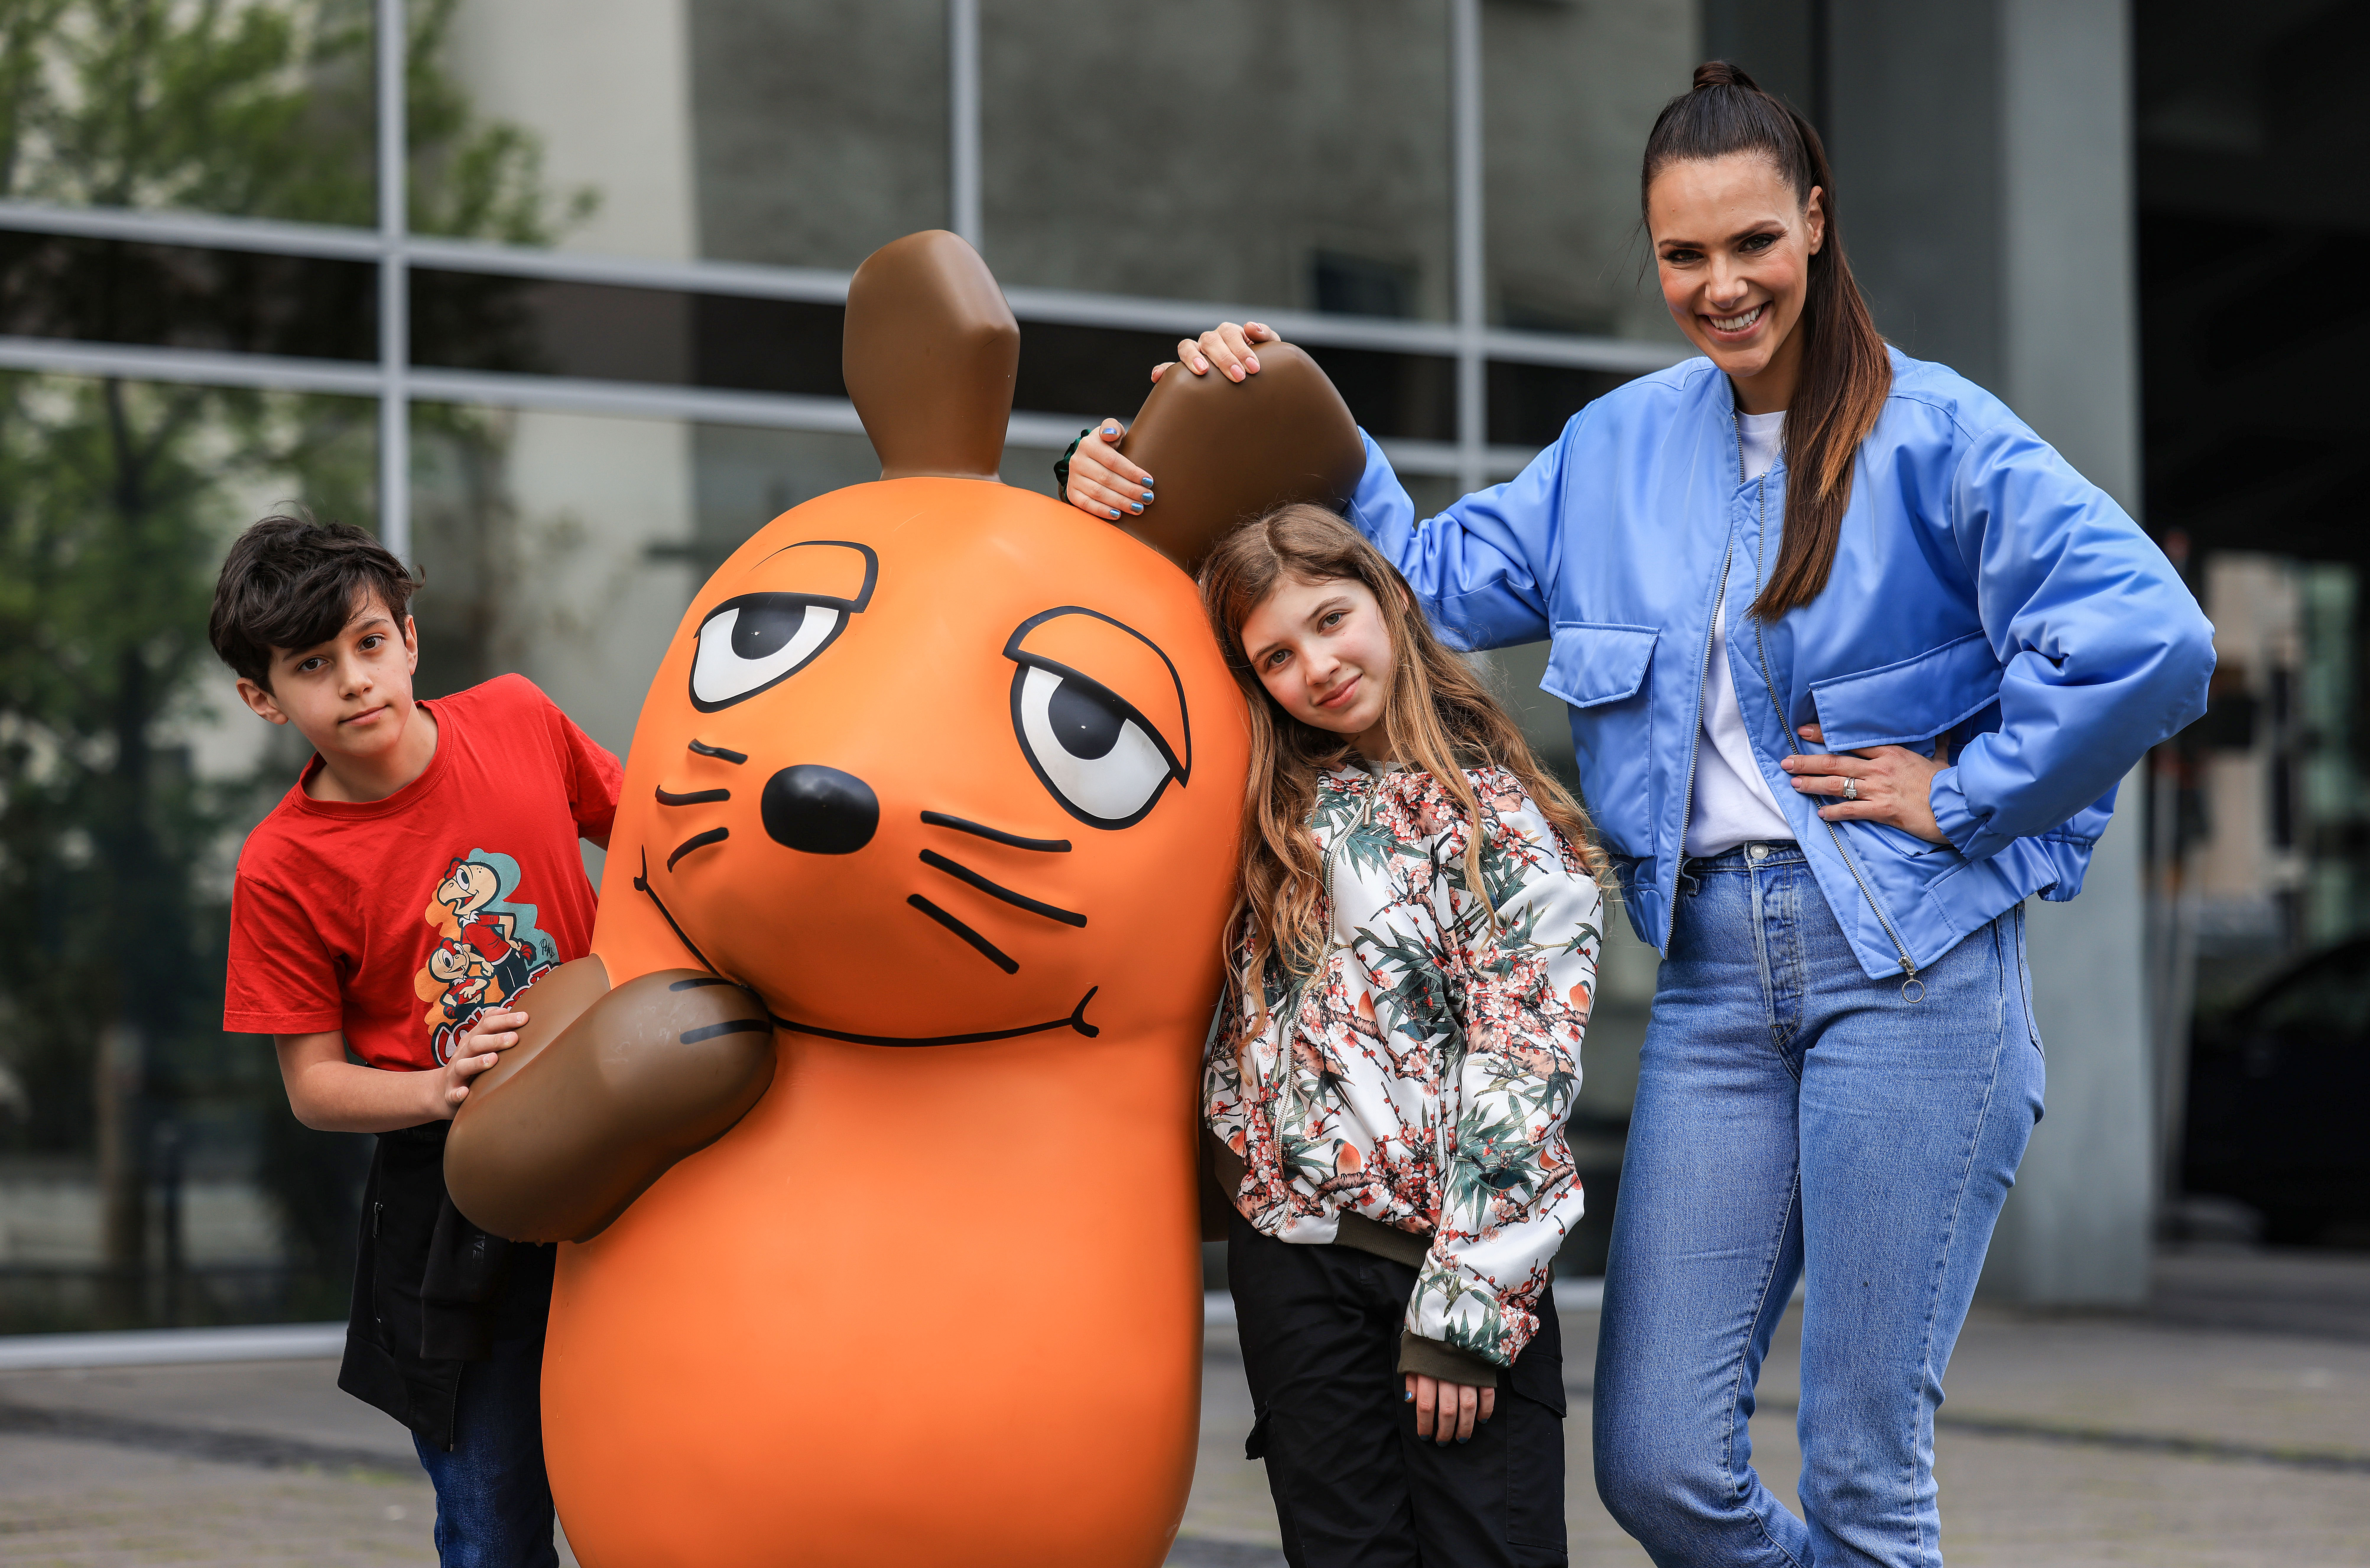 Die Fernsehmoderatorin Esther Sedlaczek (r) steht mit Kindern an der Maus-Figur.